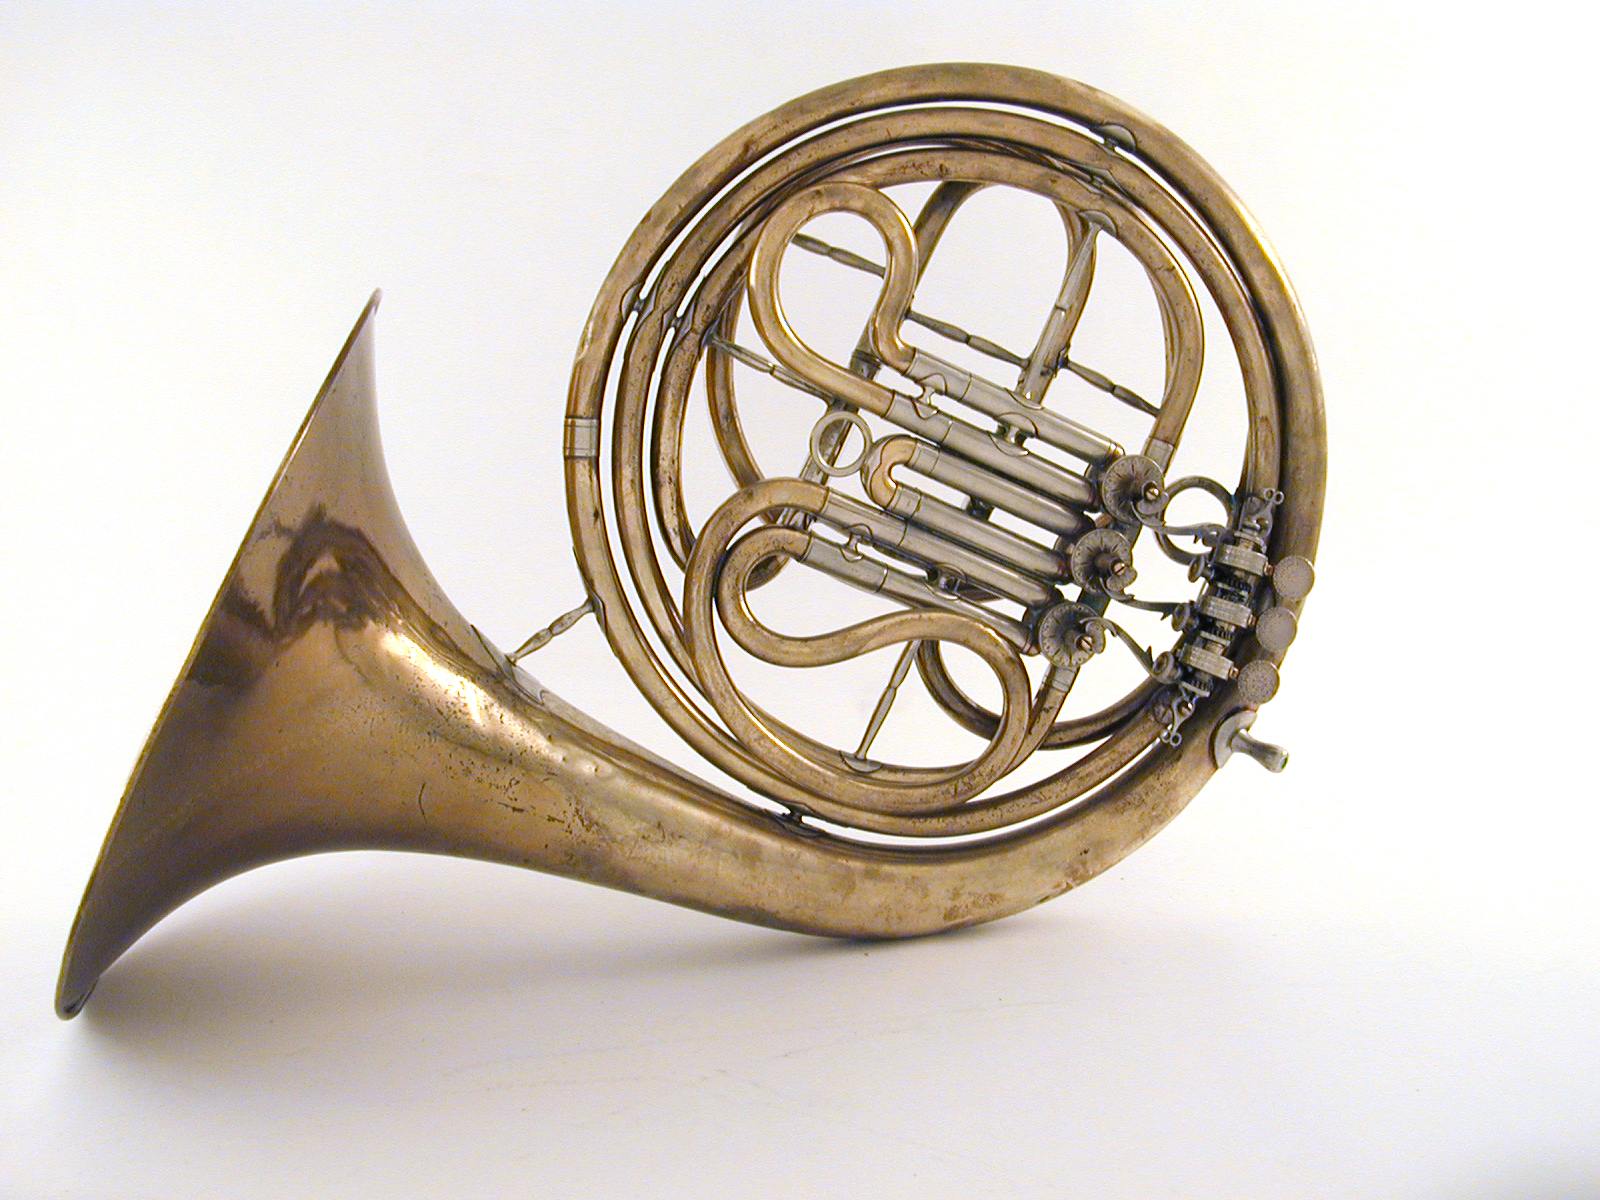 Single horn